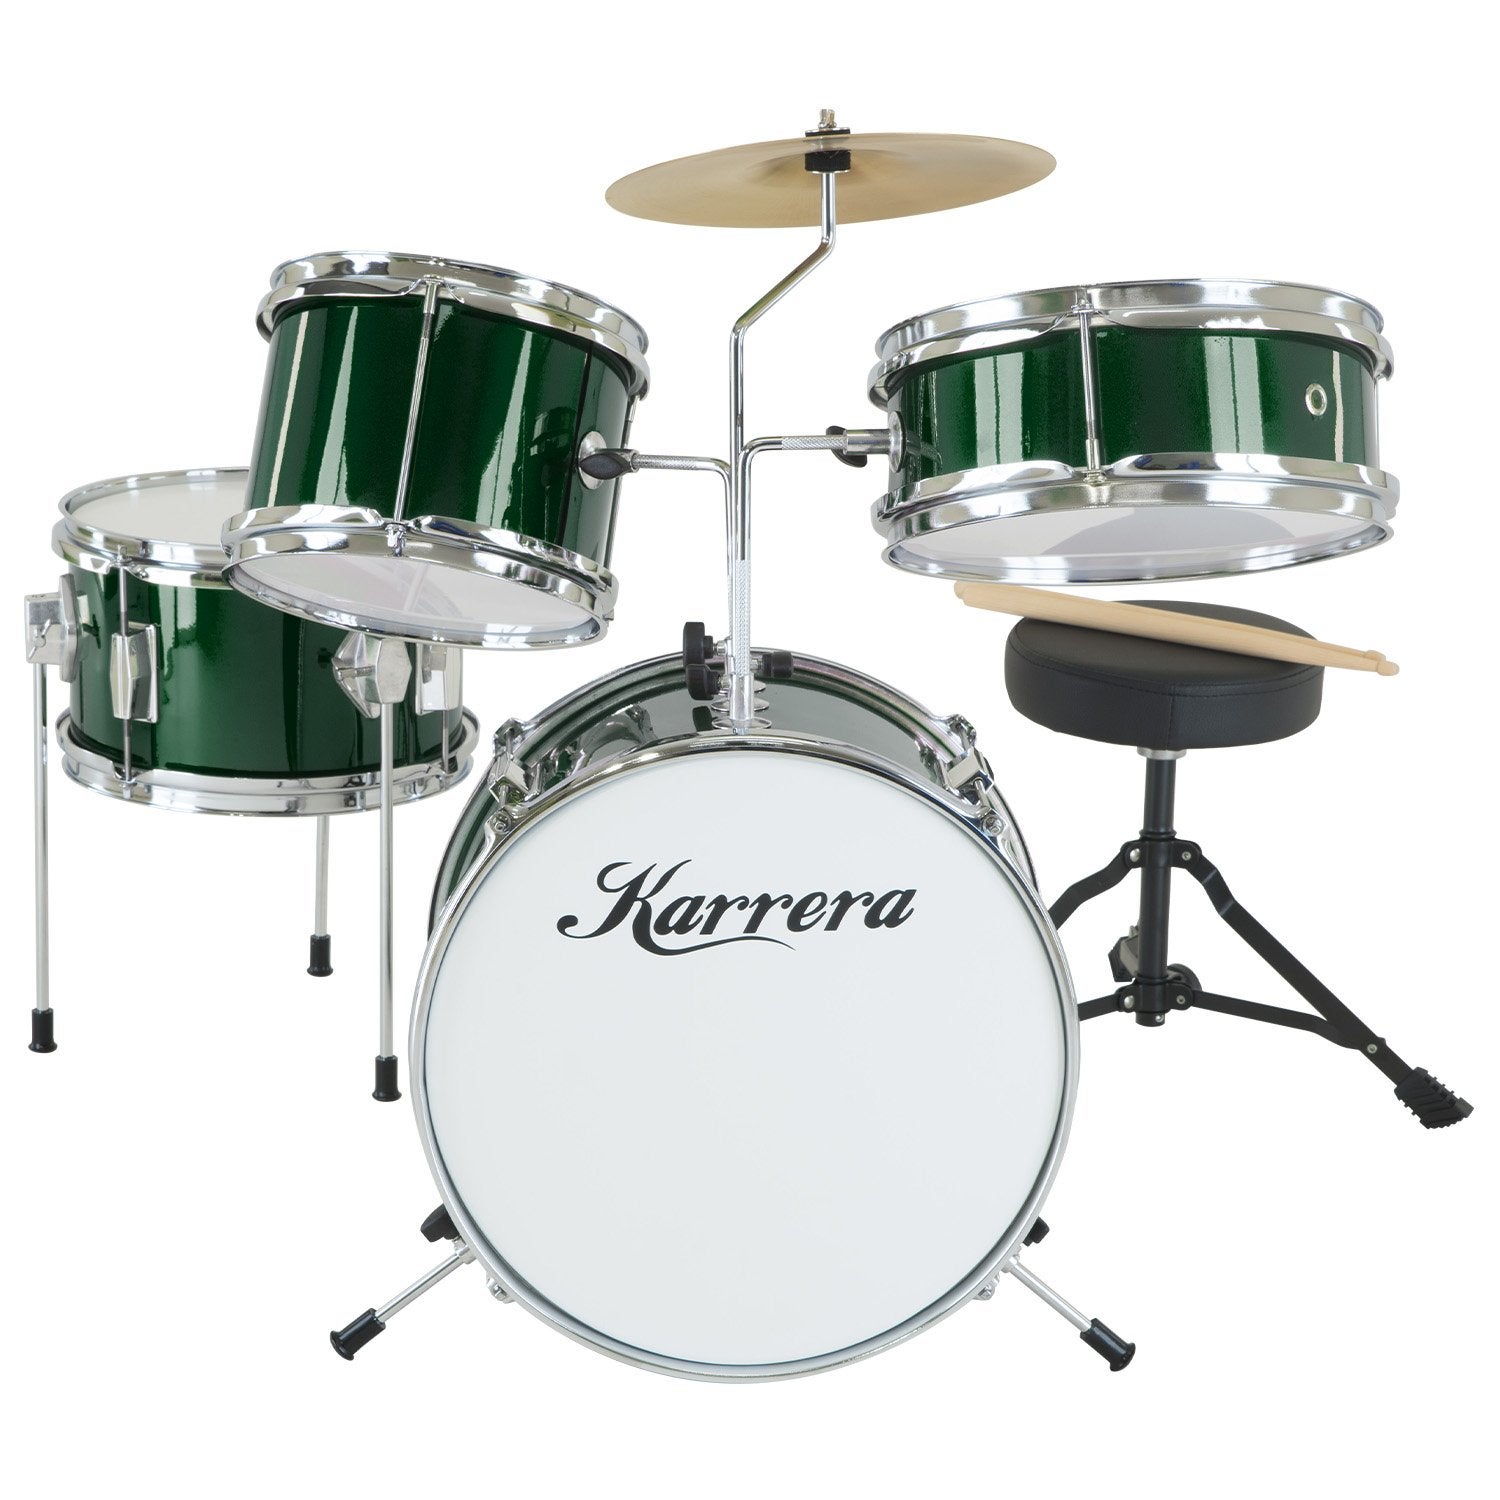 Karrera Childrens 4 Piece Drum Kit Set - Green